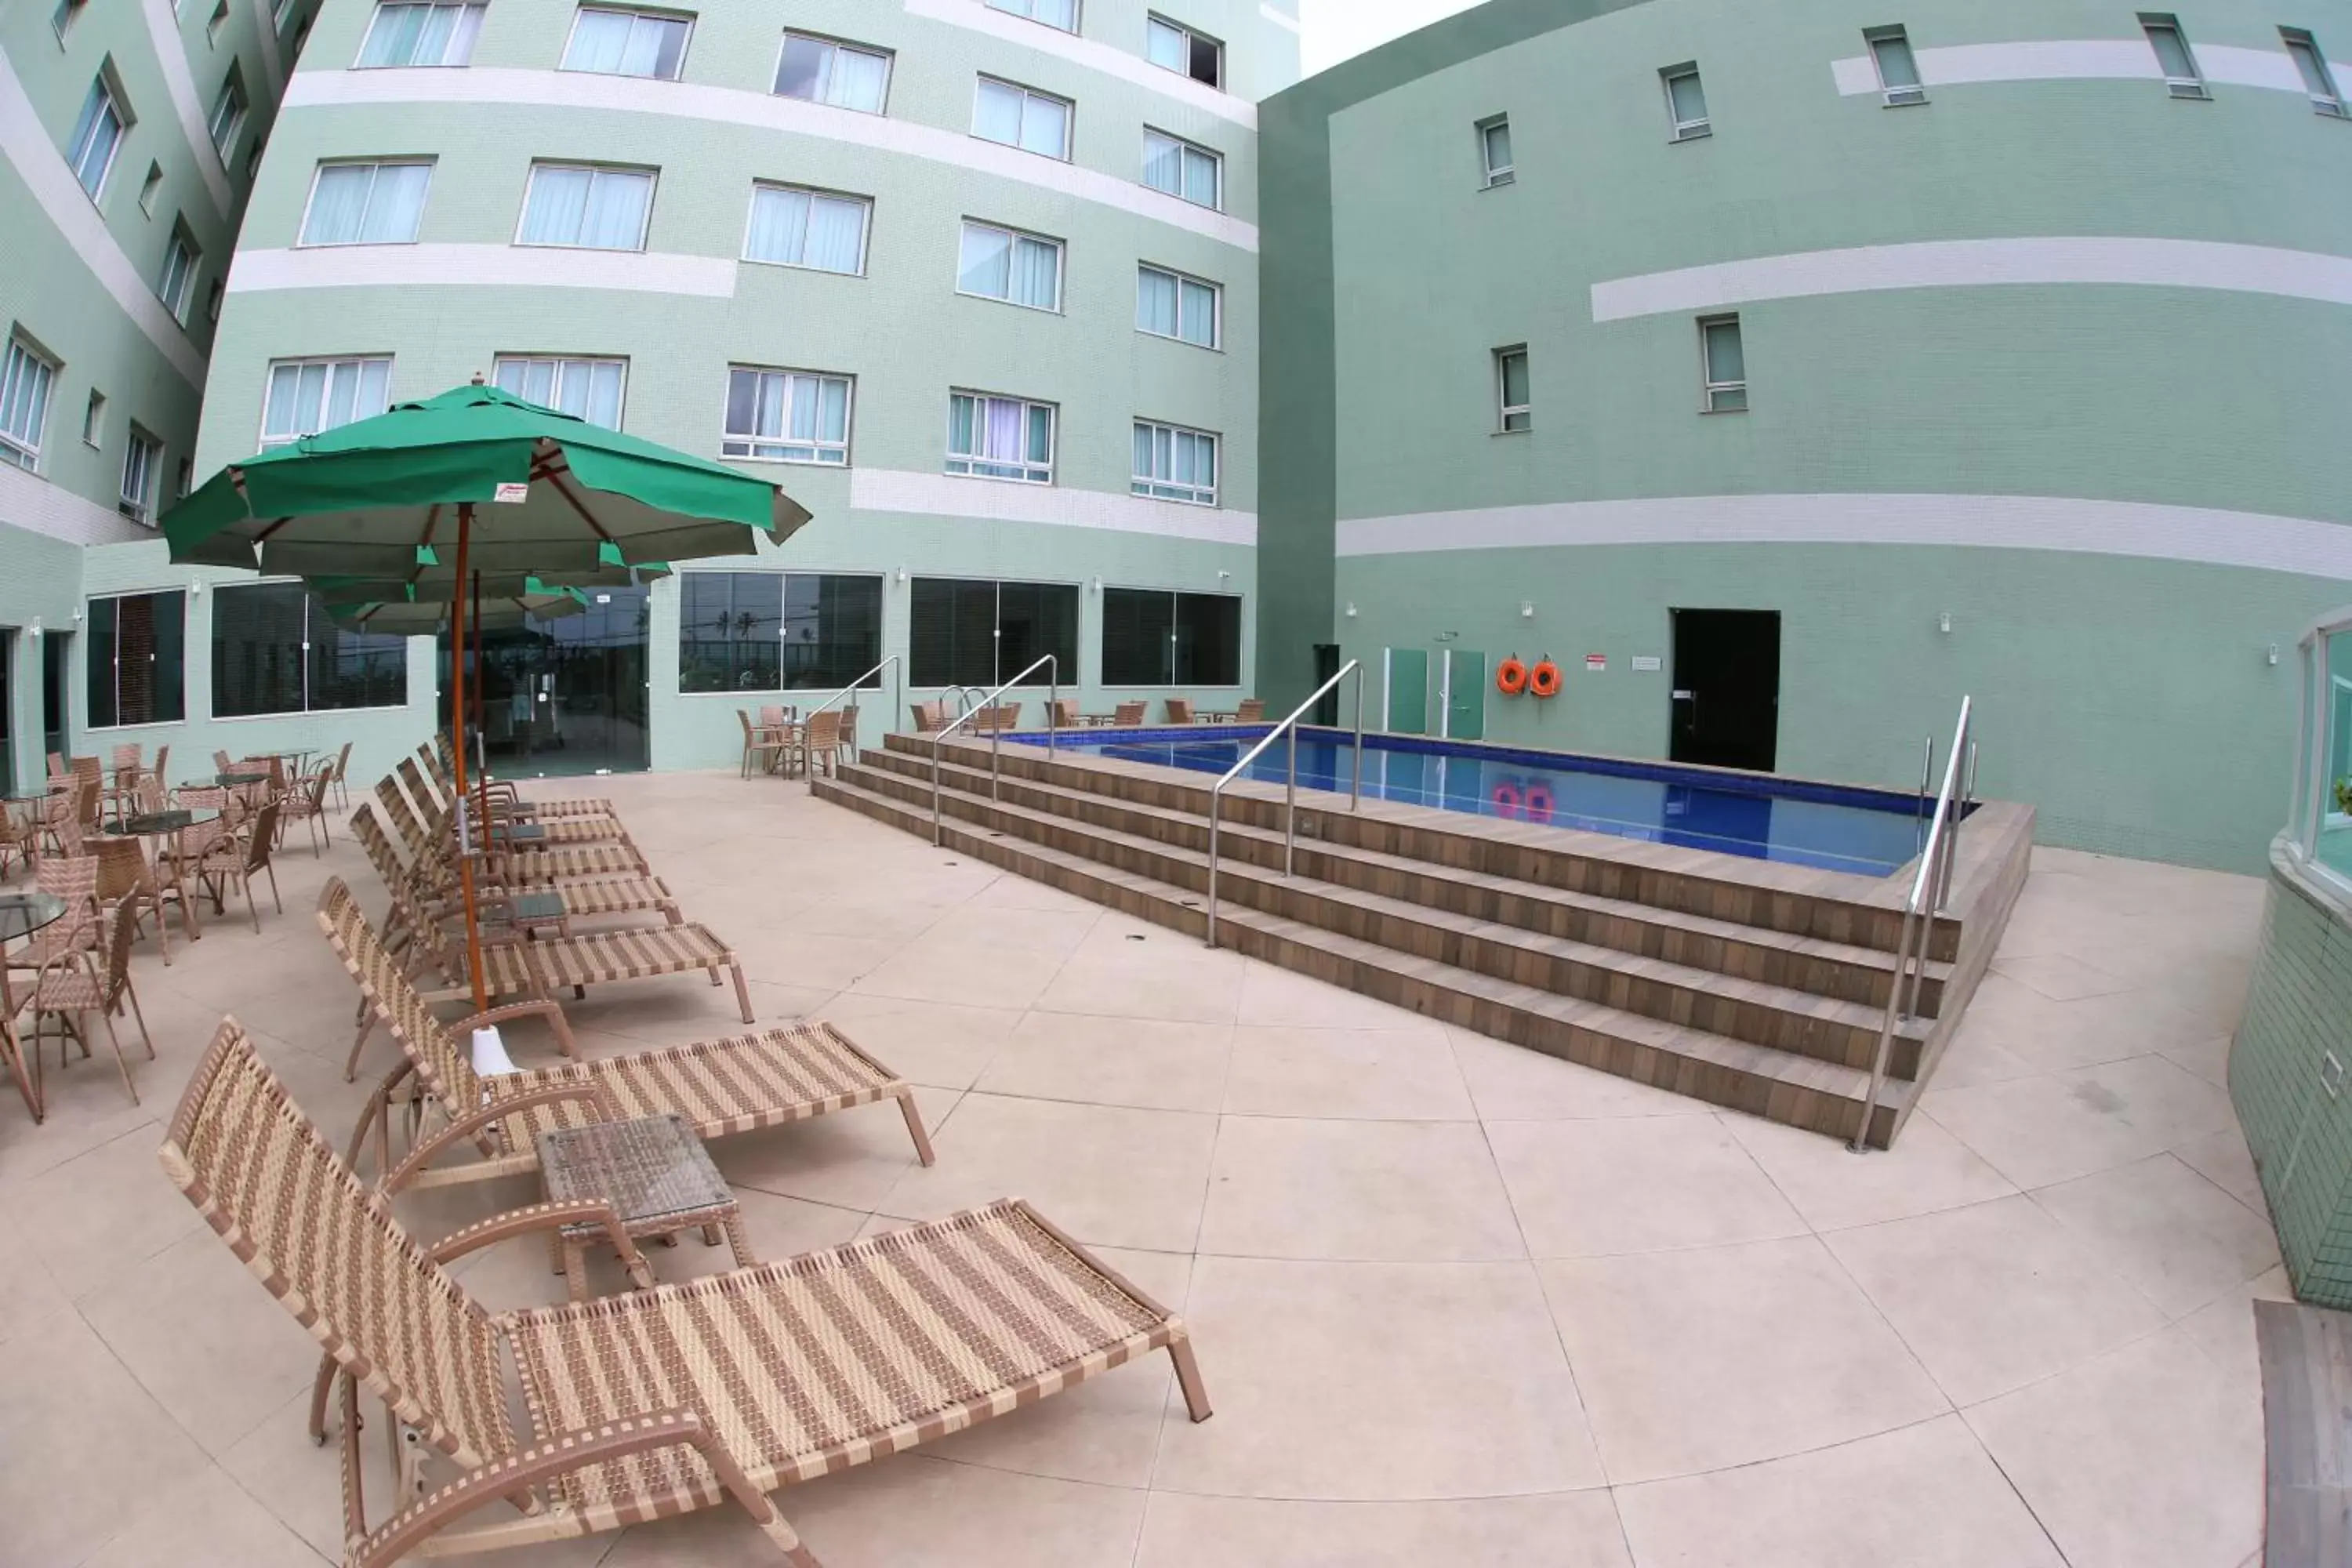 Swimming Pool in Real Classic Bahia Hotel